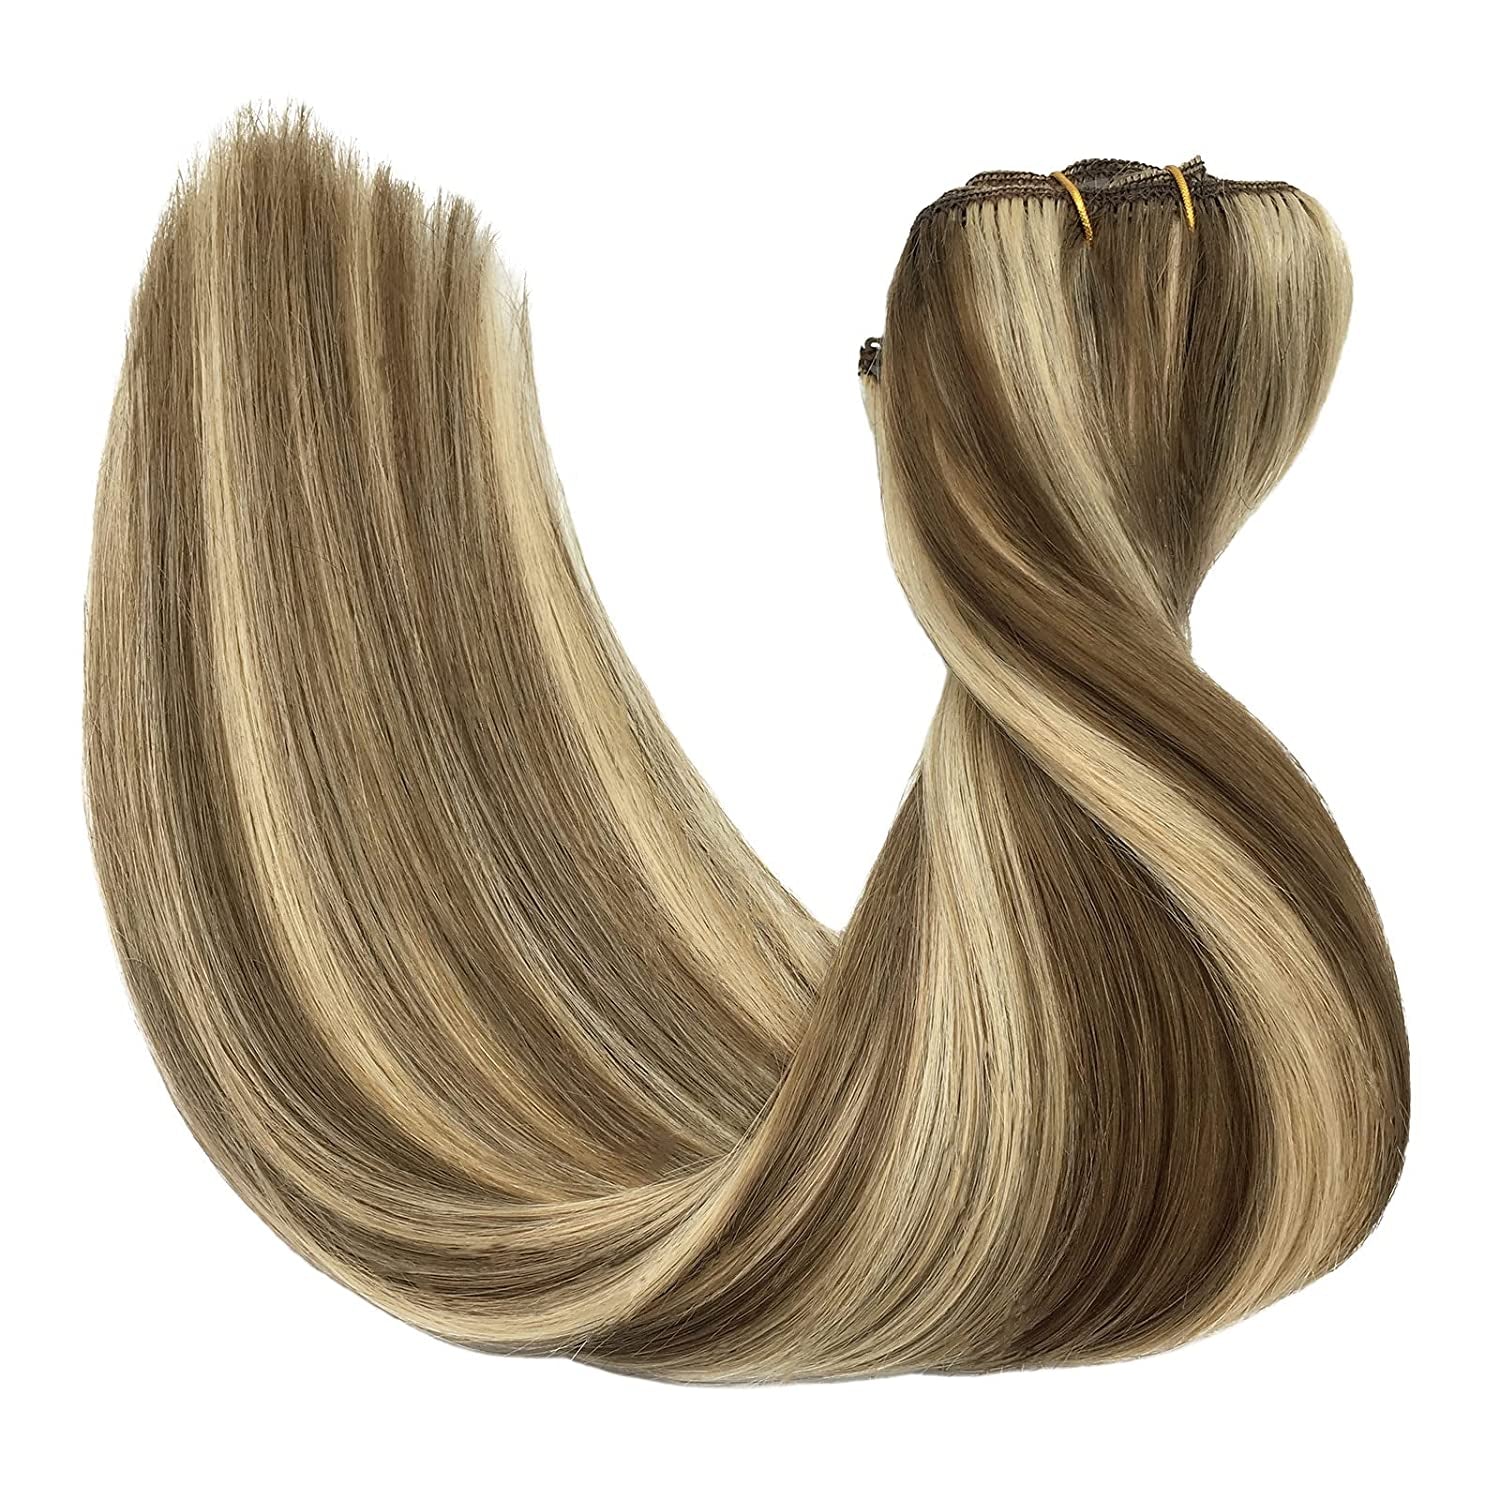 Goo Goo Hair Clip in Hair Extensions, Seamless Hair Extensions Clip in Human Hair, Straight Hair Extensions, Salt and Pepper (1B/GERY) / 18